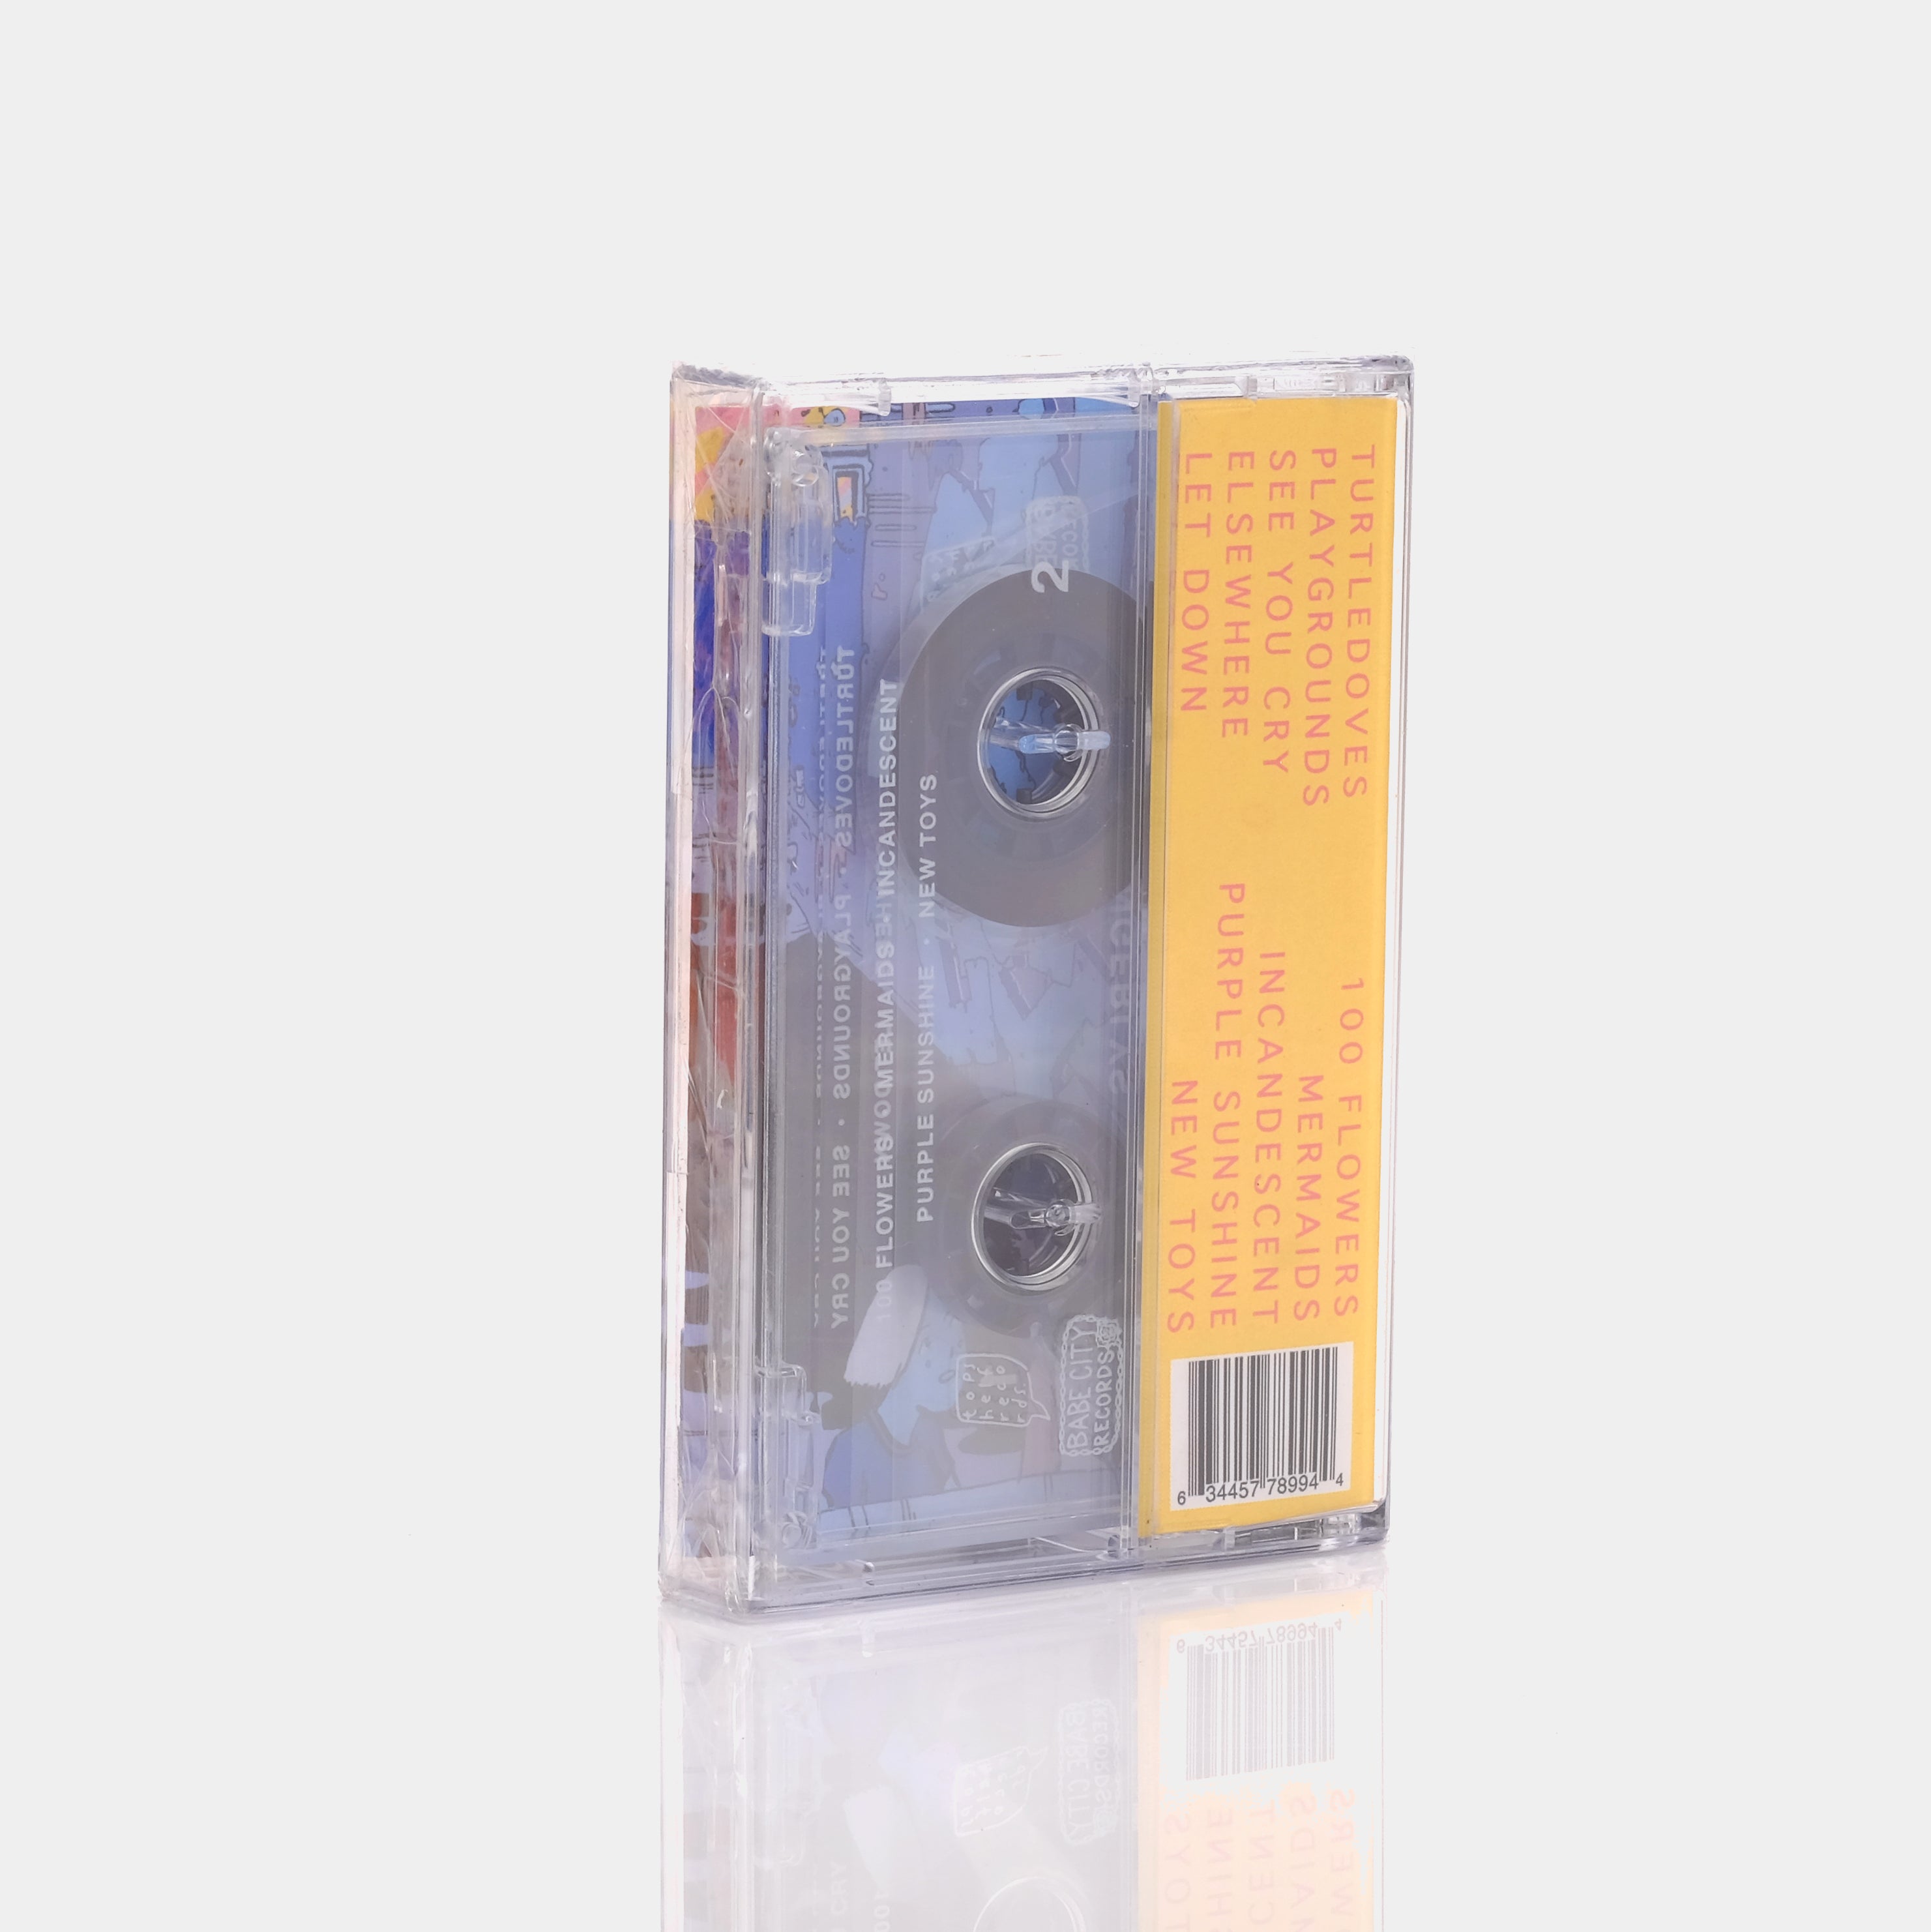 Gingerlys - Gingerlys Cassette Tape